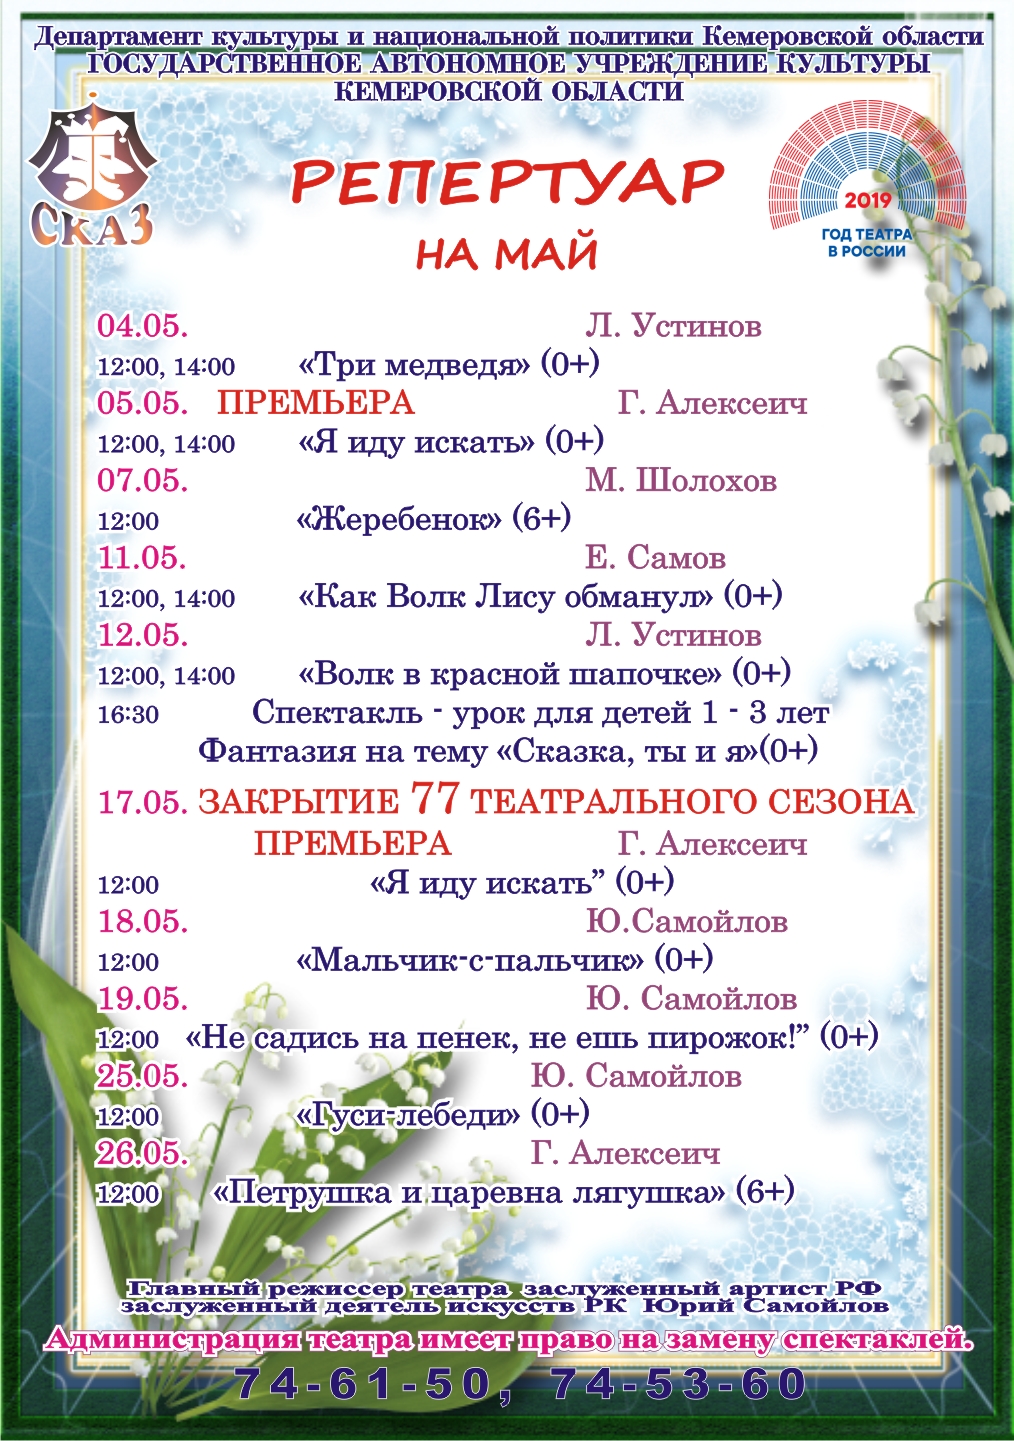 Репертуар театра кукол "Сказ" на май 2019